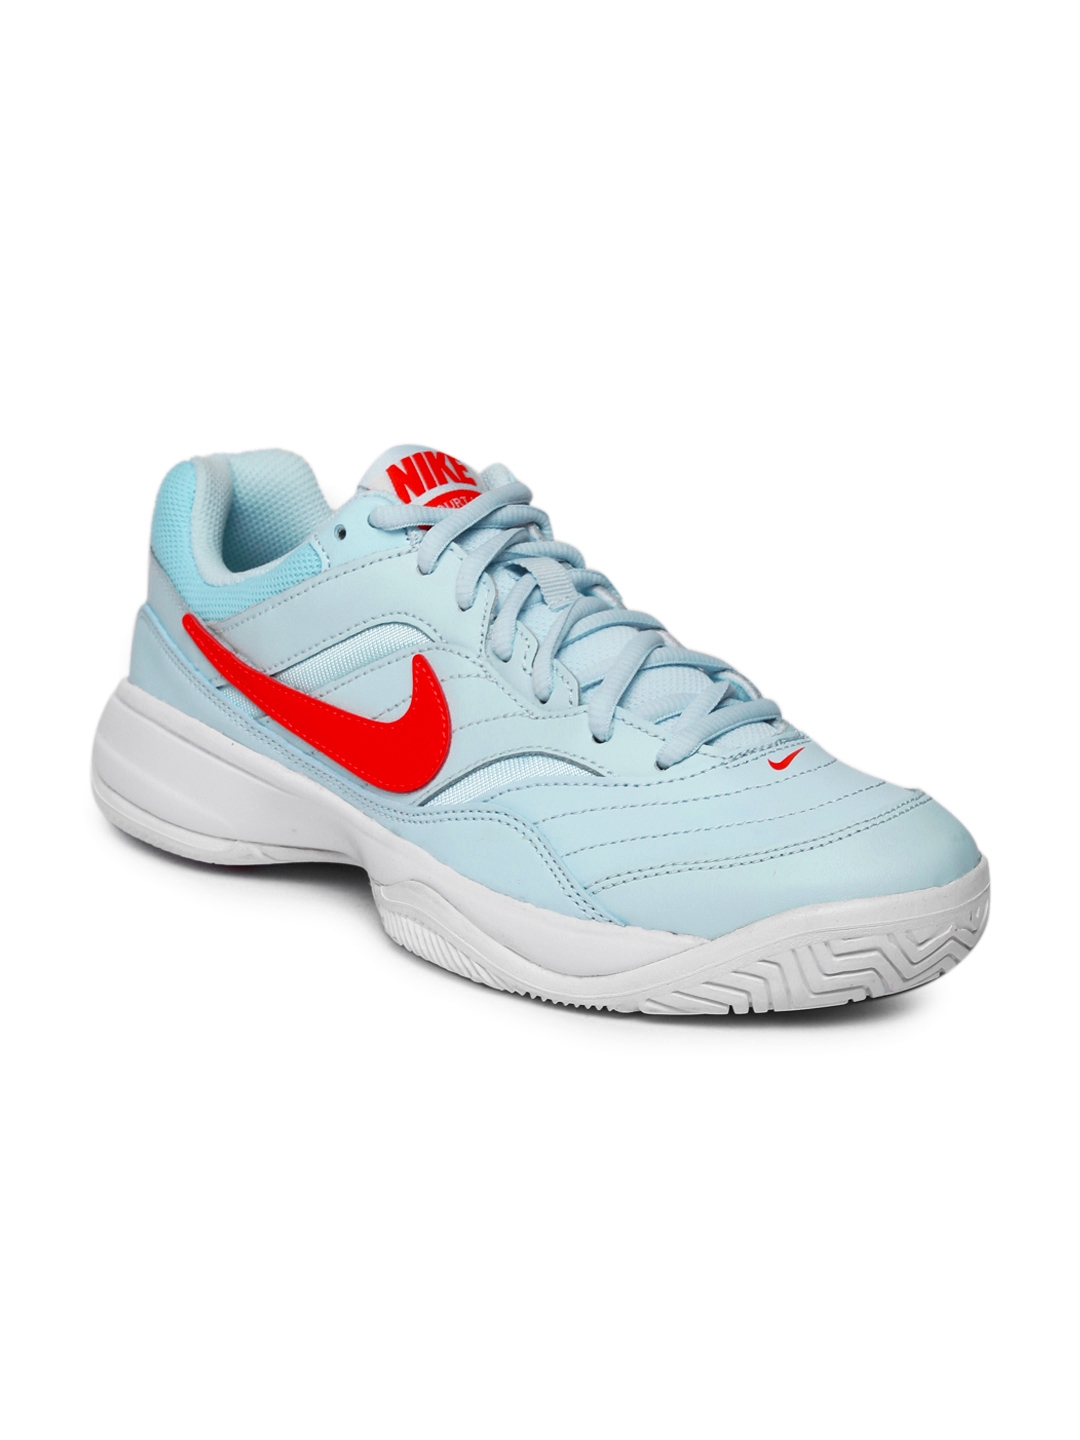 Buy Nike Women Blue COURT LITE Tennis Shoes - Sports Shoes for Women 7487606 | Myntra